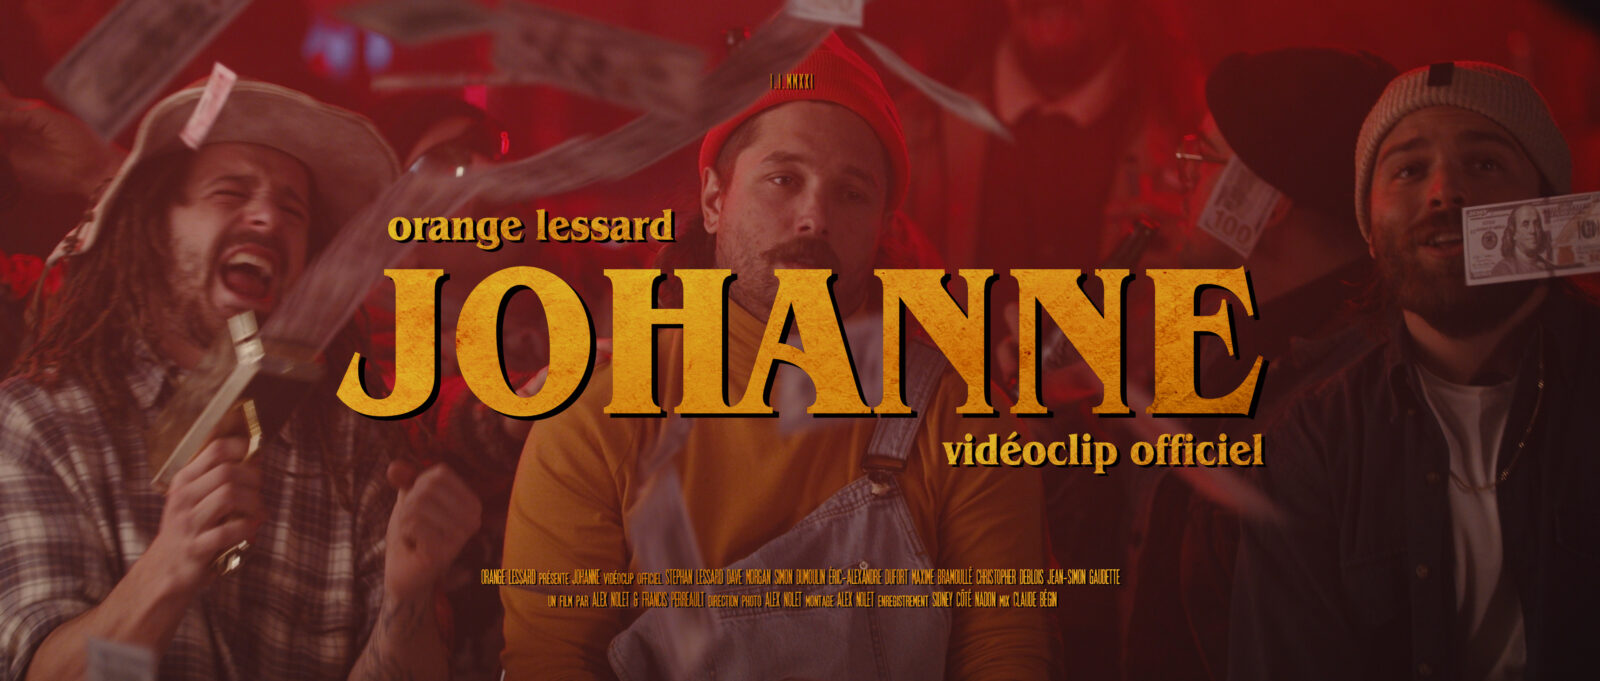 Orange Lessard | Johanne (Vidéoclip officiel)